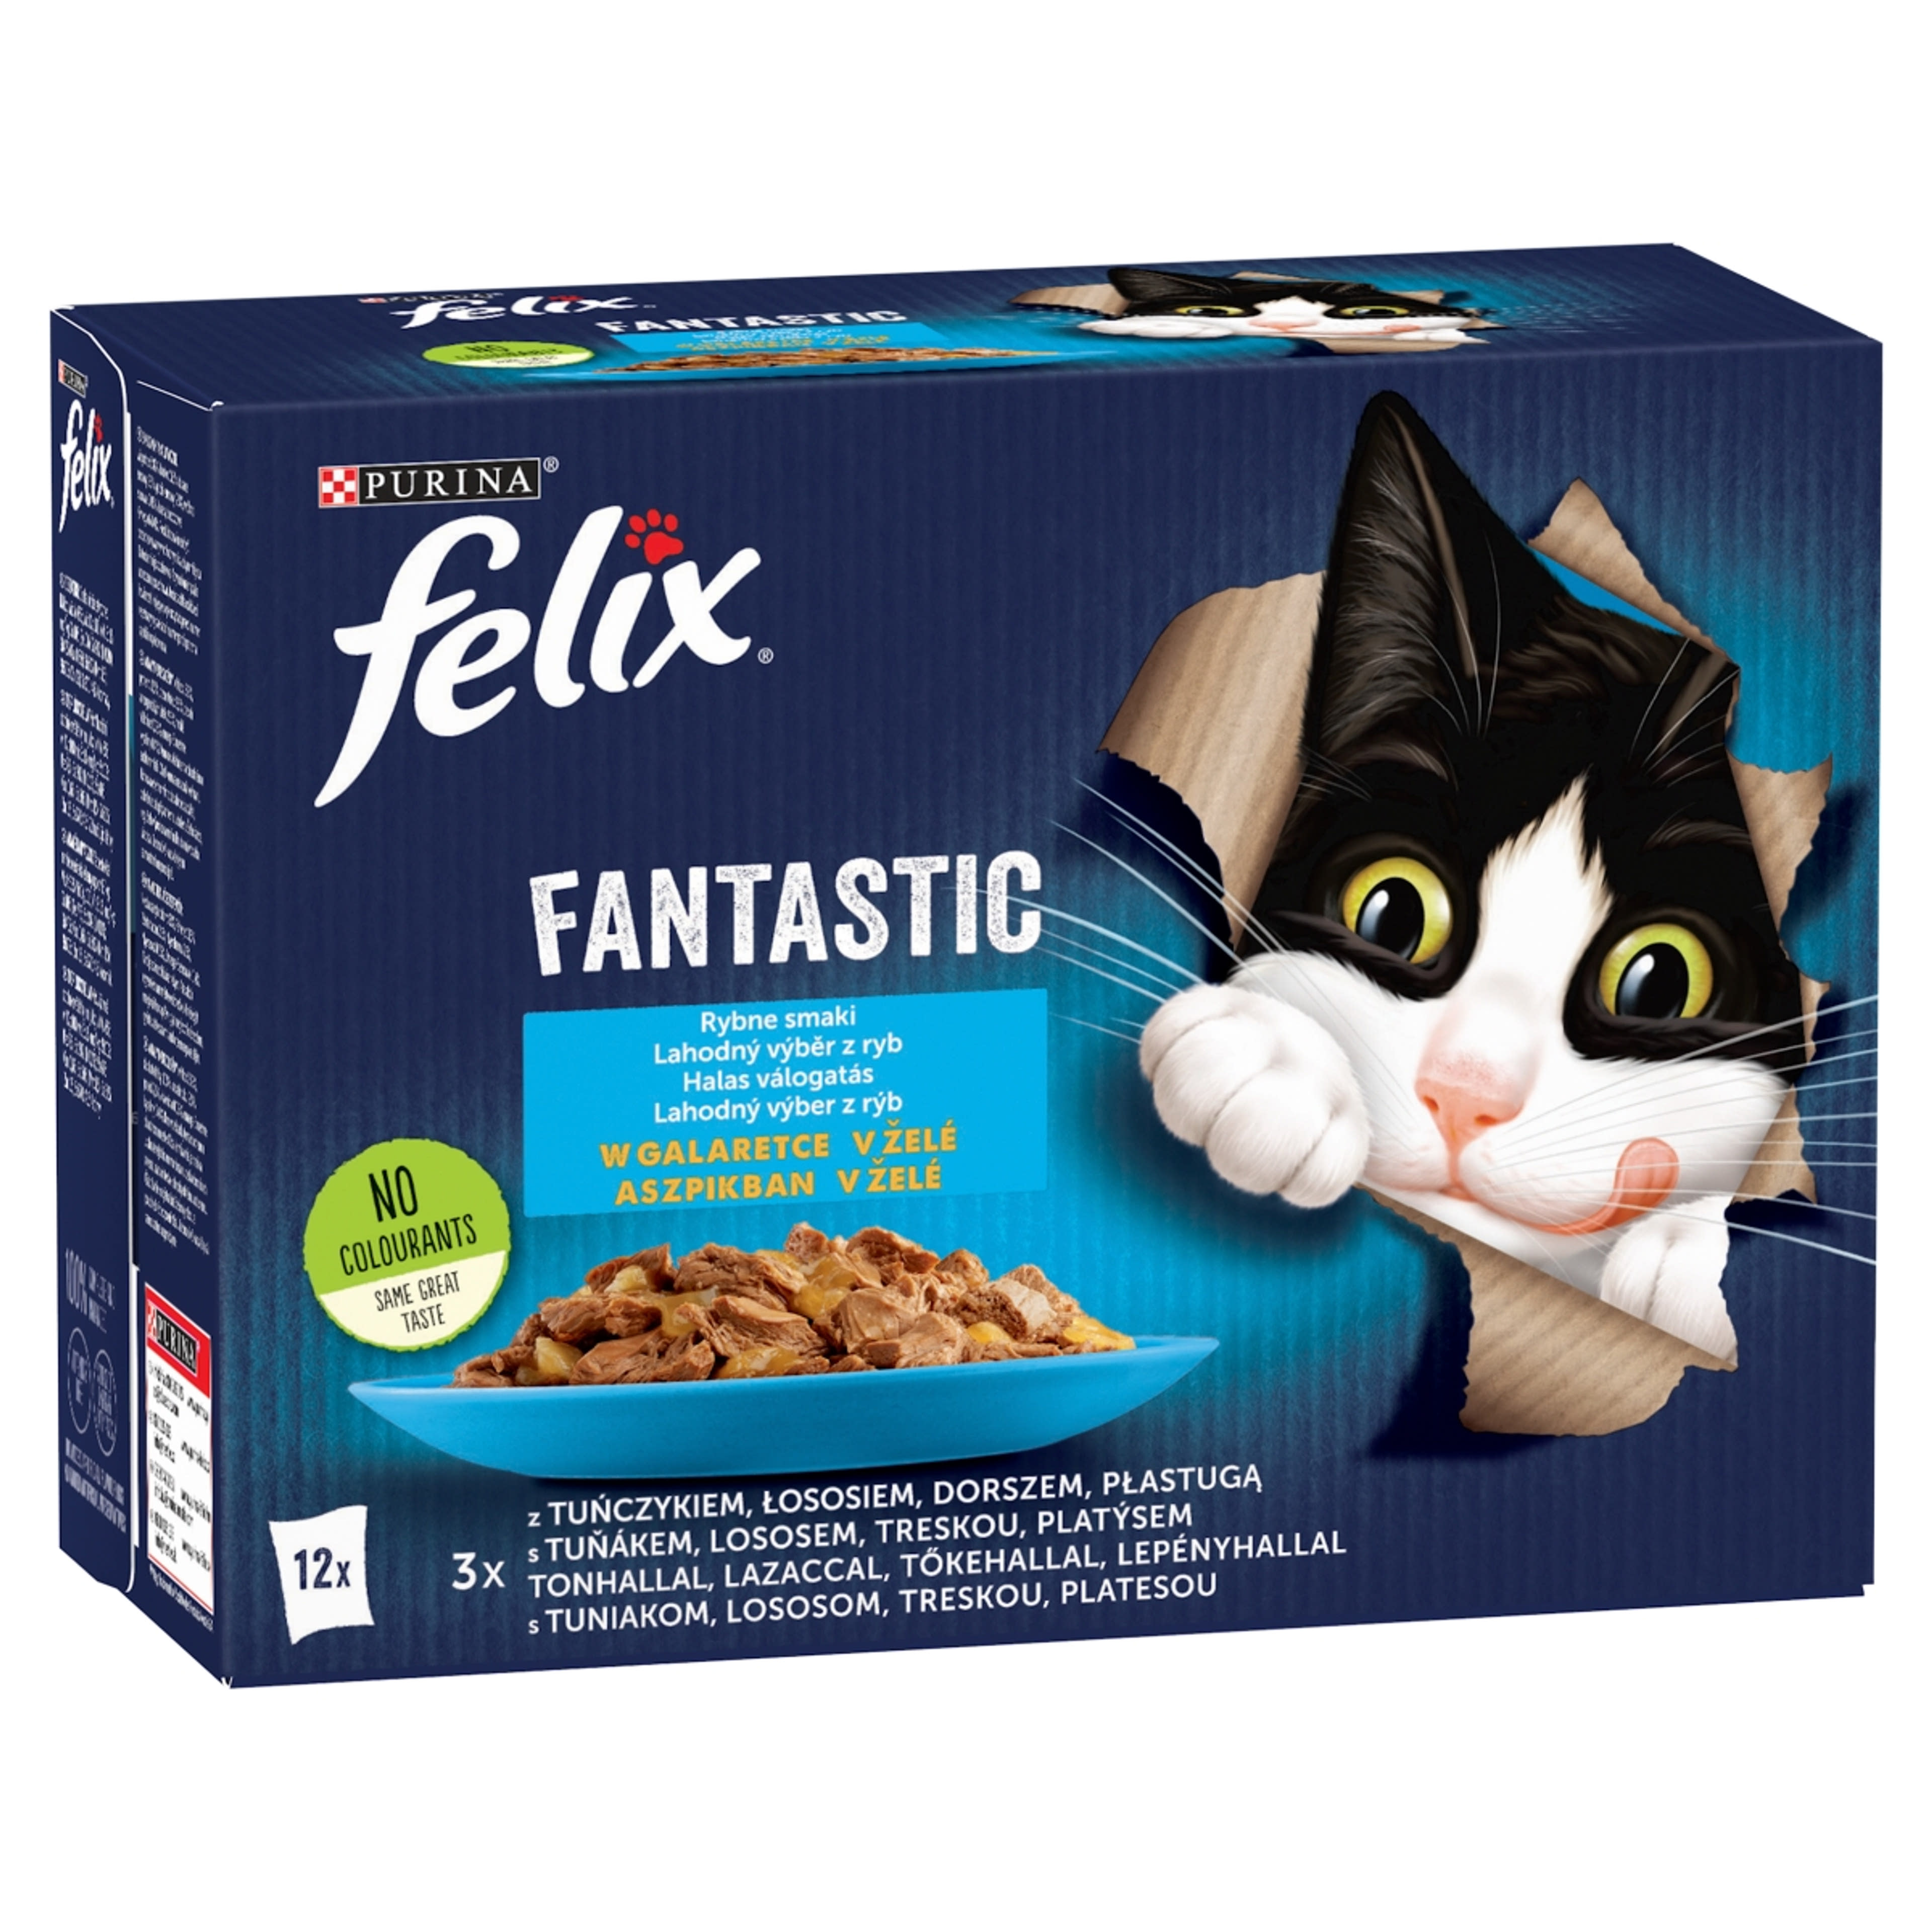 Felix Fantastic halas válogatás aszpikban, nedves macskaeledel (12 x 85 g) -  1020 g